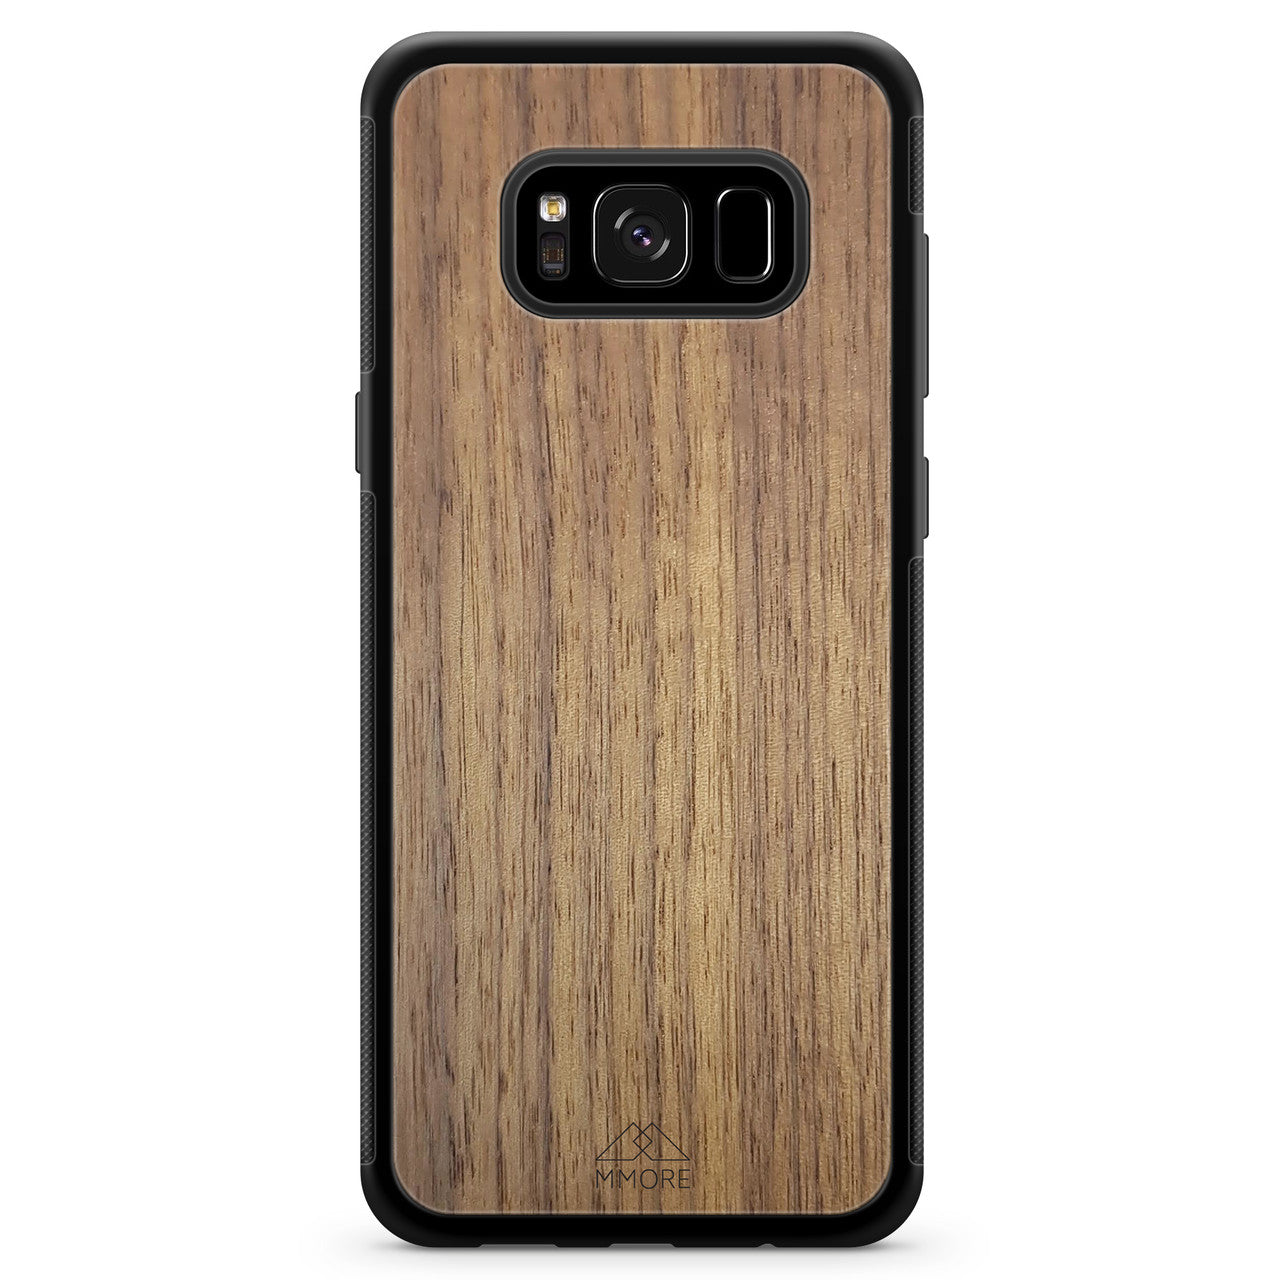 Funda de madera para teléfono Samsung S8 de nogal americano